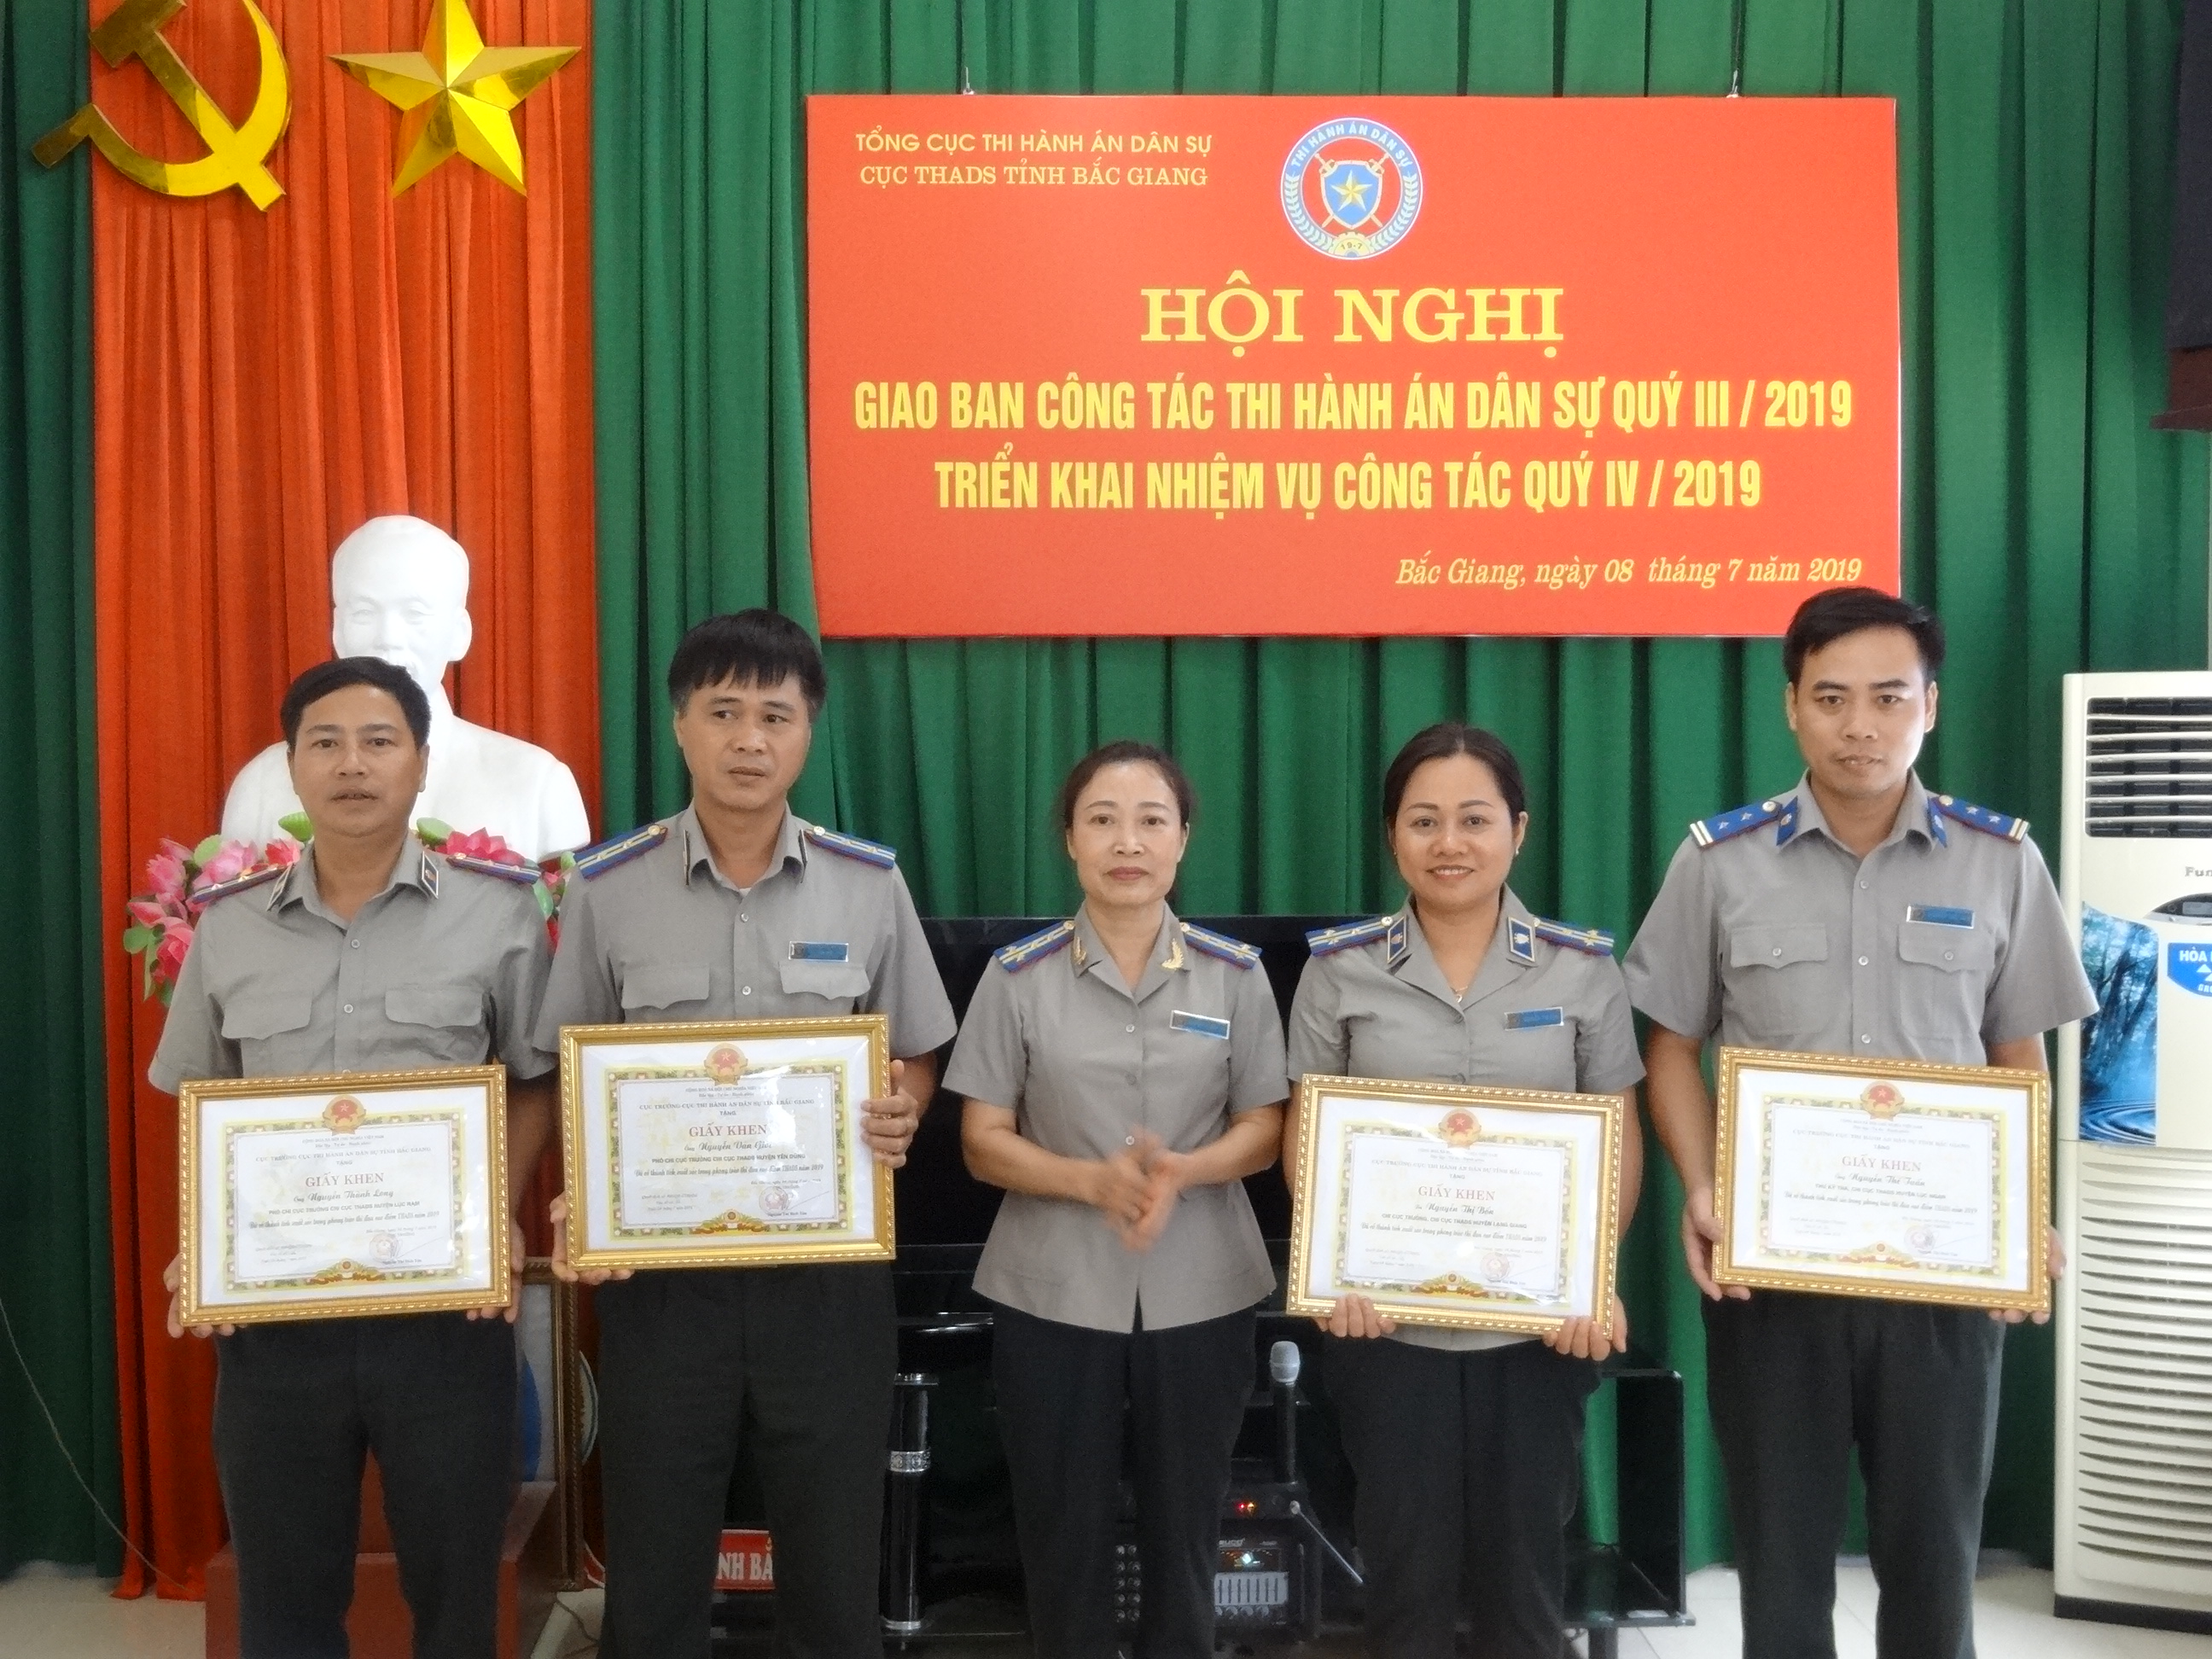 Bắc Giang tổ chức Hội nghị giao ban công tác THADS quý III/2019 Triển khai nhiệm vụ công tác quý IV/2019